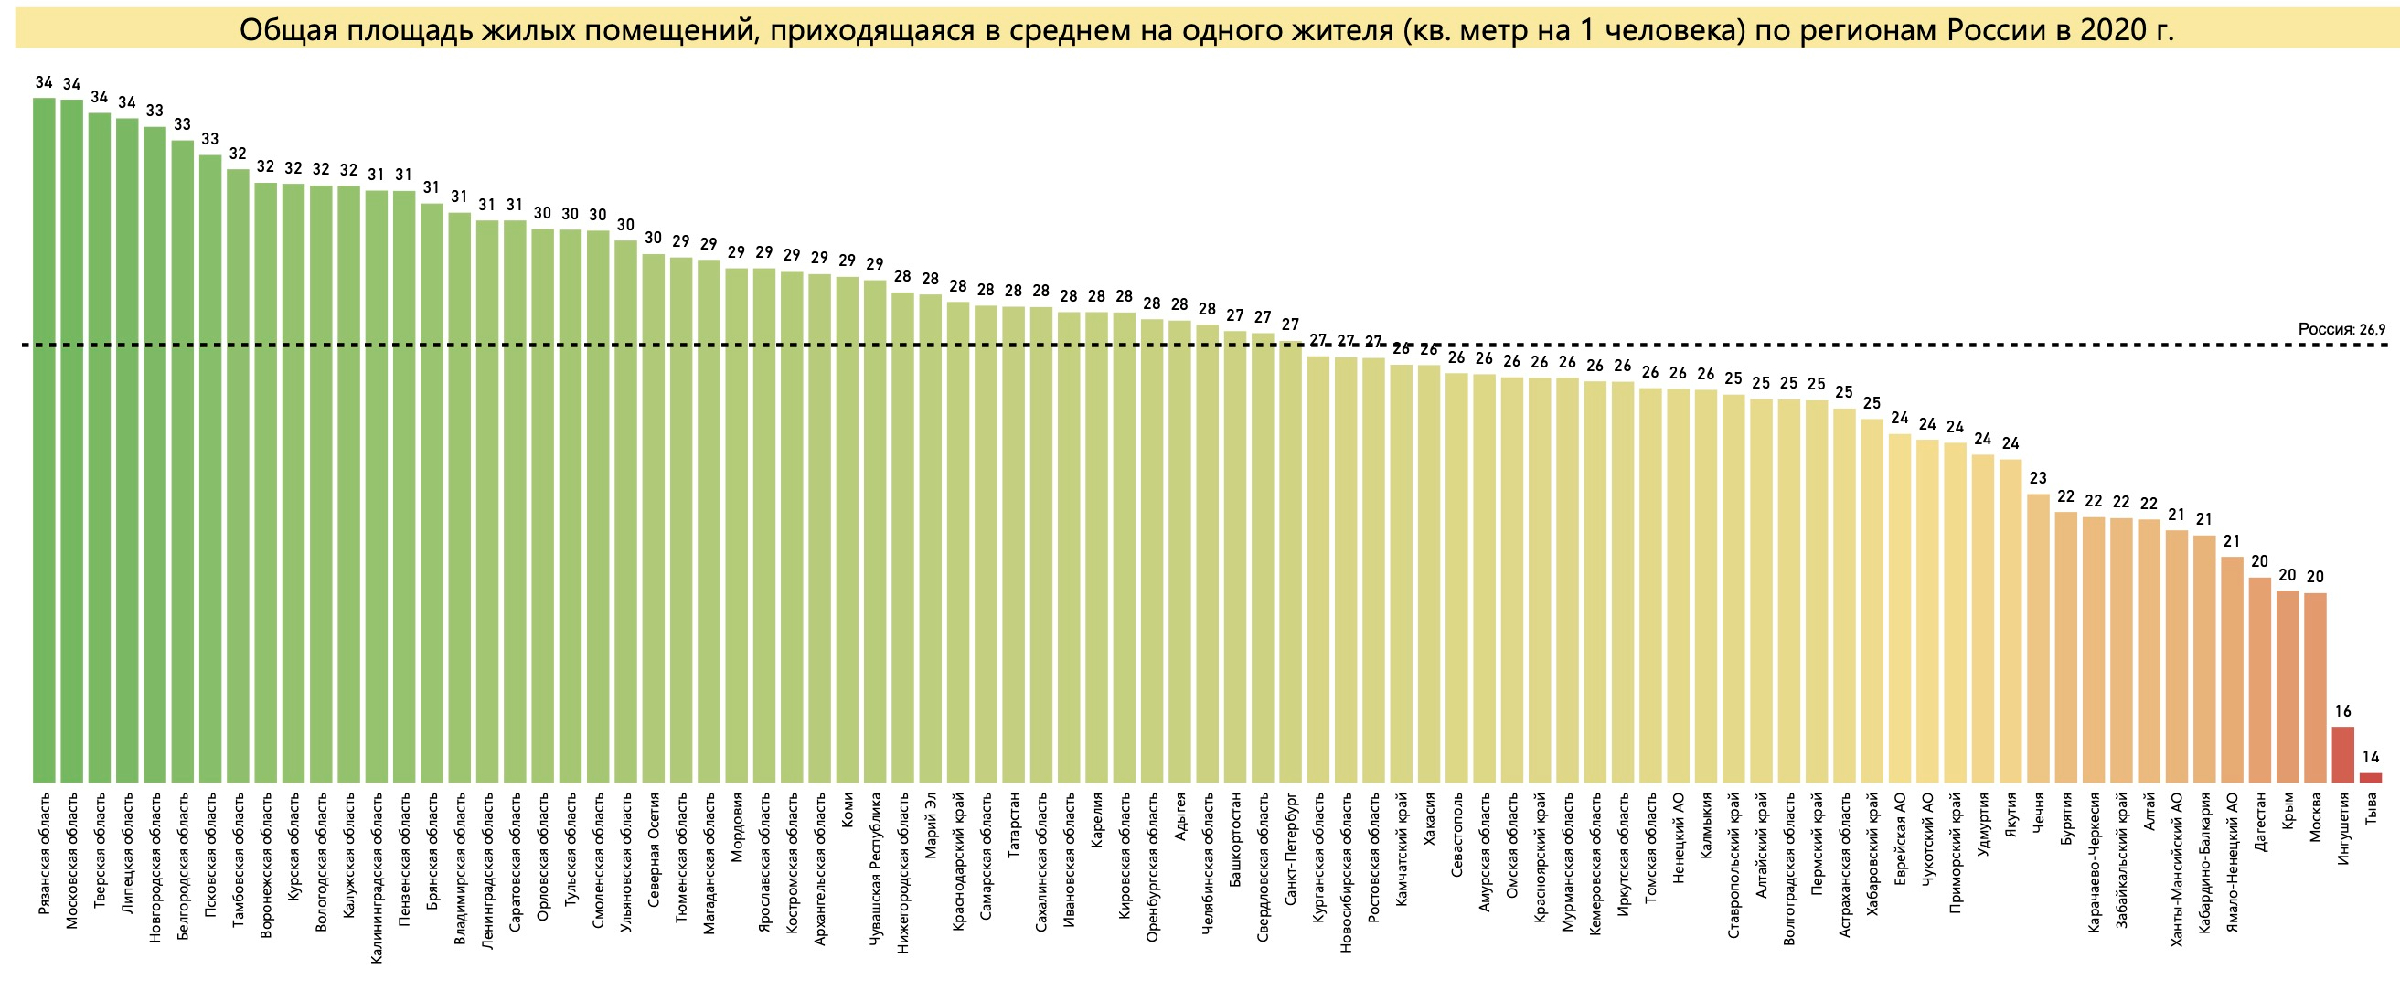 Обеспеченность жильем по регионам России. Источник: расчет автора по данным Росстат